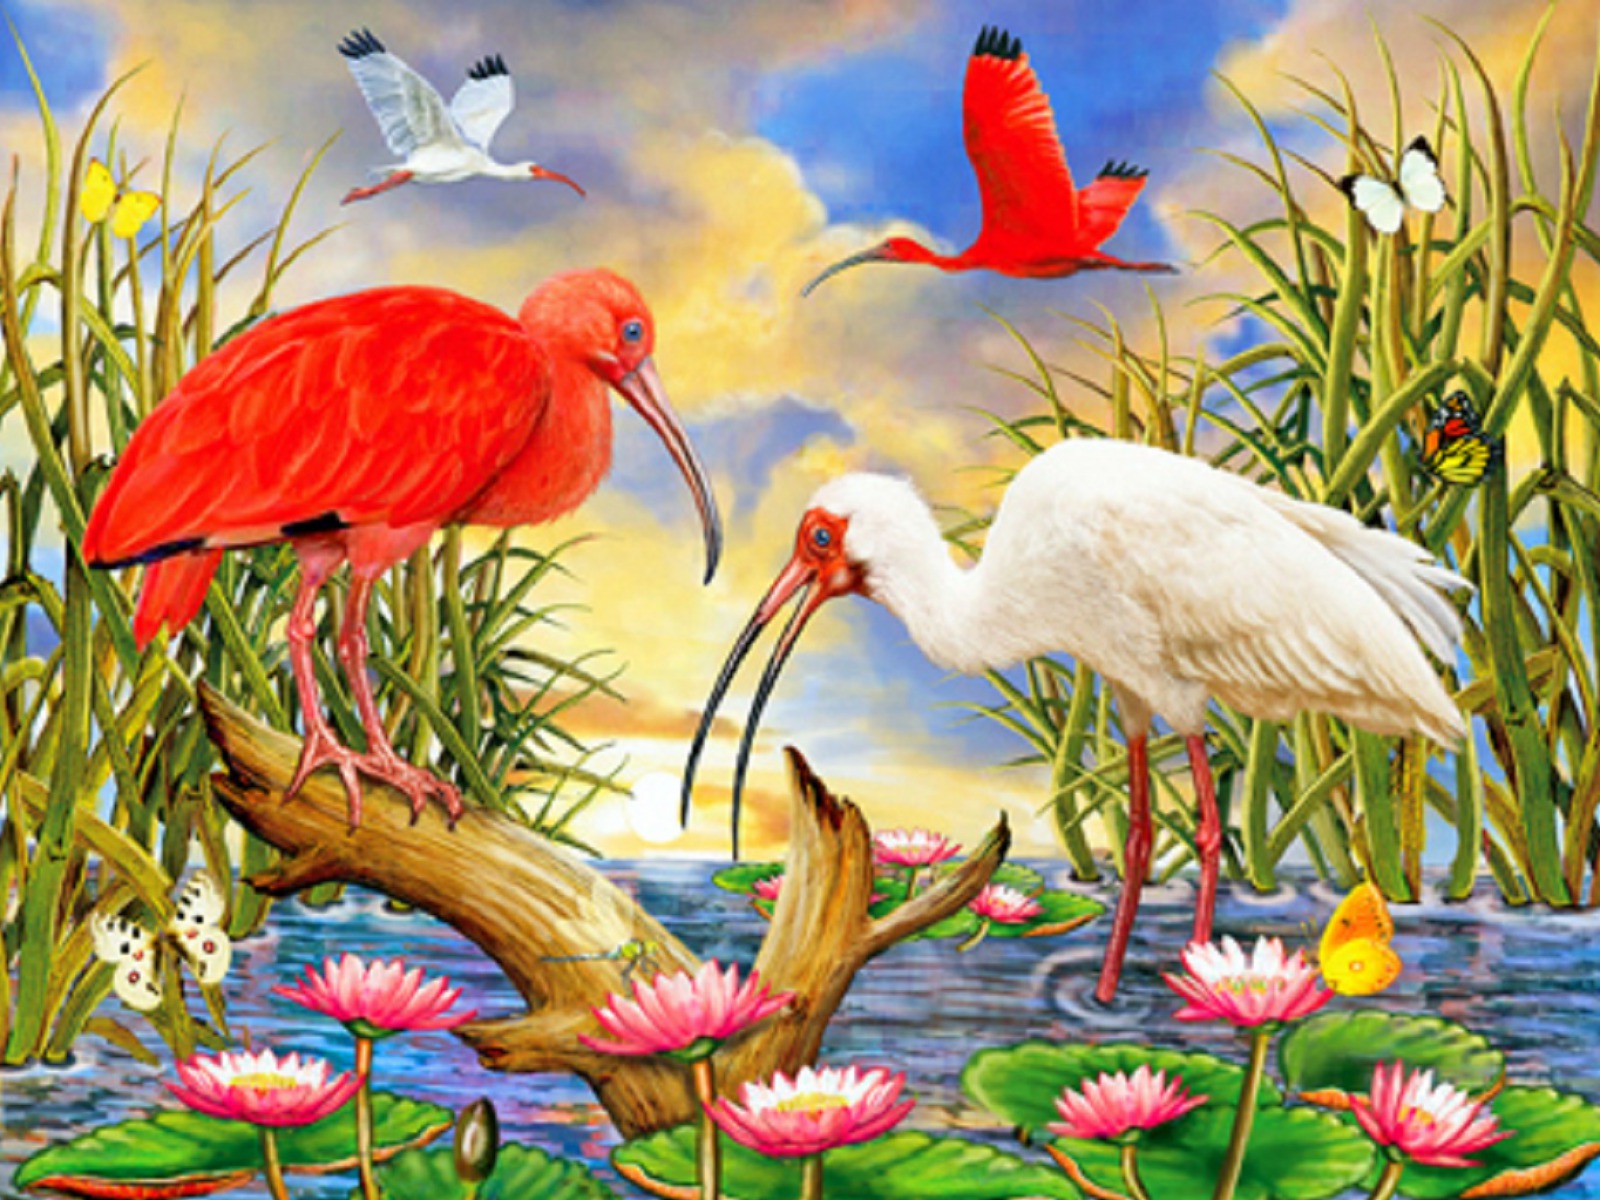 bird and butterfly wallpaper,bird,vertebrate,natural landscape,crane like bird,whooping crane